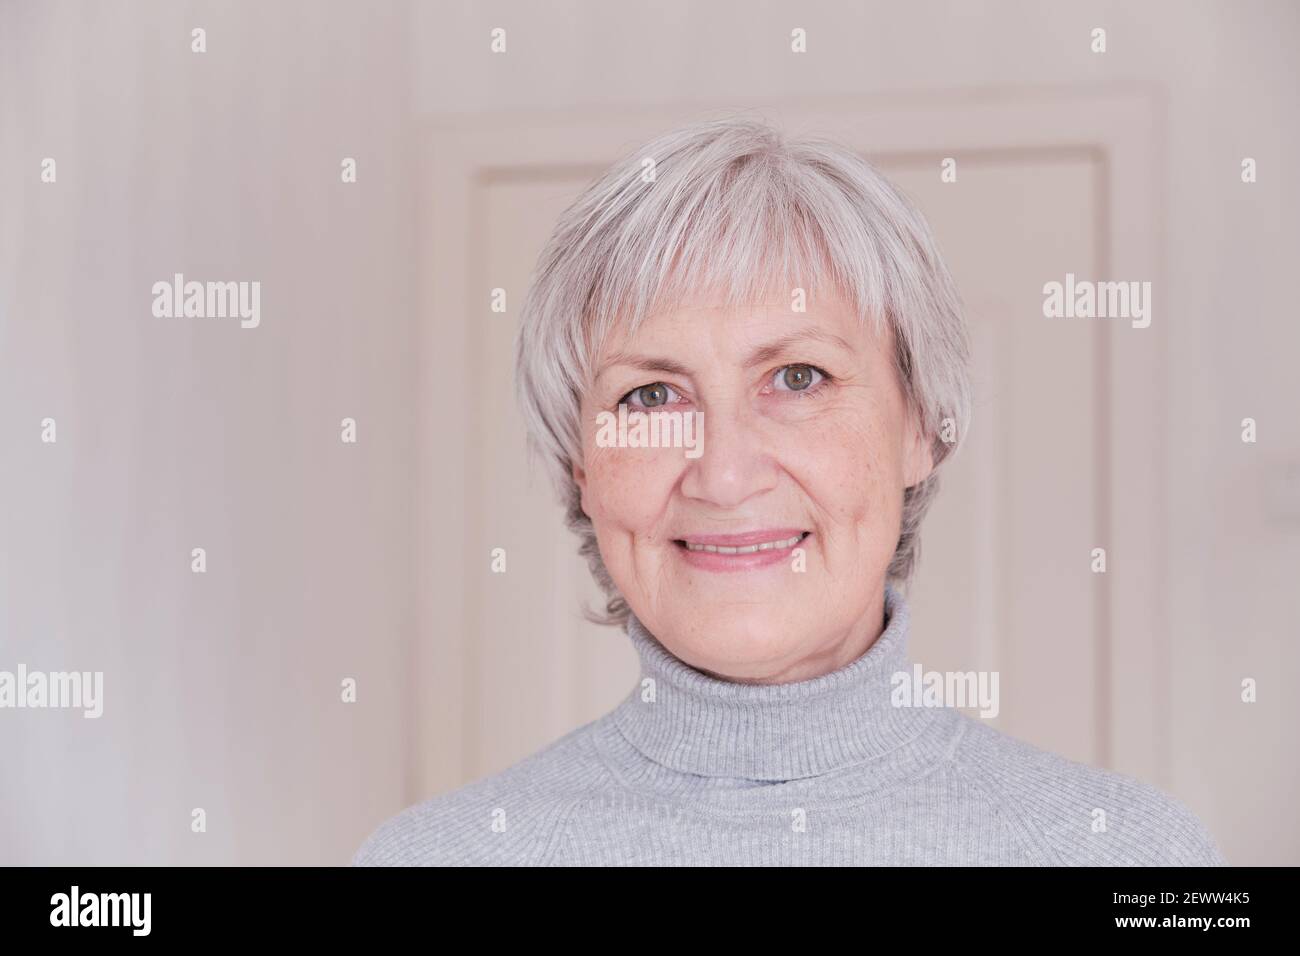 Ein Nahaufnahme Porträt einer lächelnden und Blick auf die Kamera ältere kaukasische Frau mit kurzen grauen Haaren auf einem hellen Hintergrund. Stockfoto